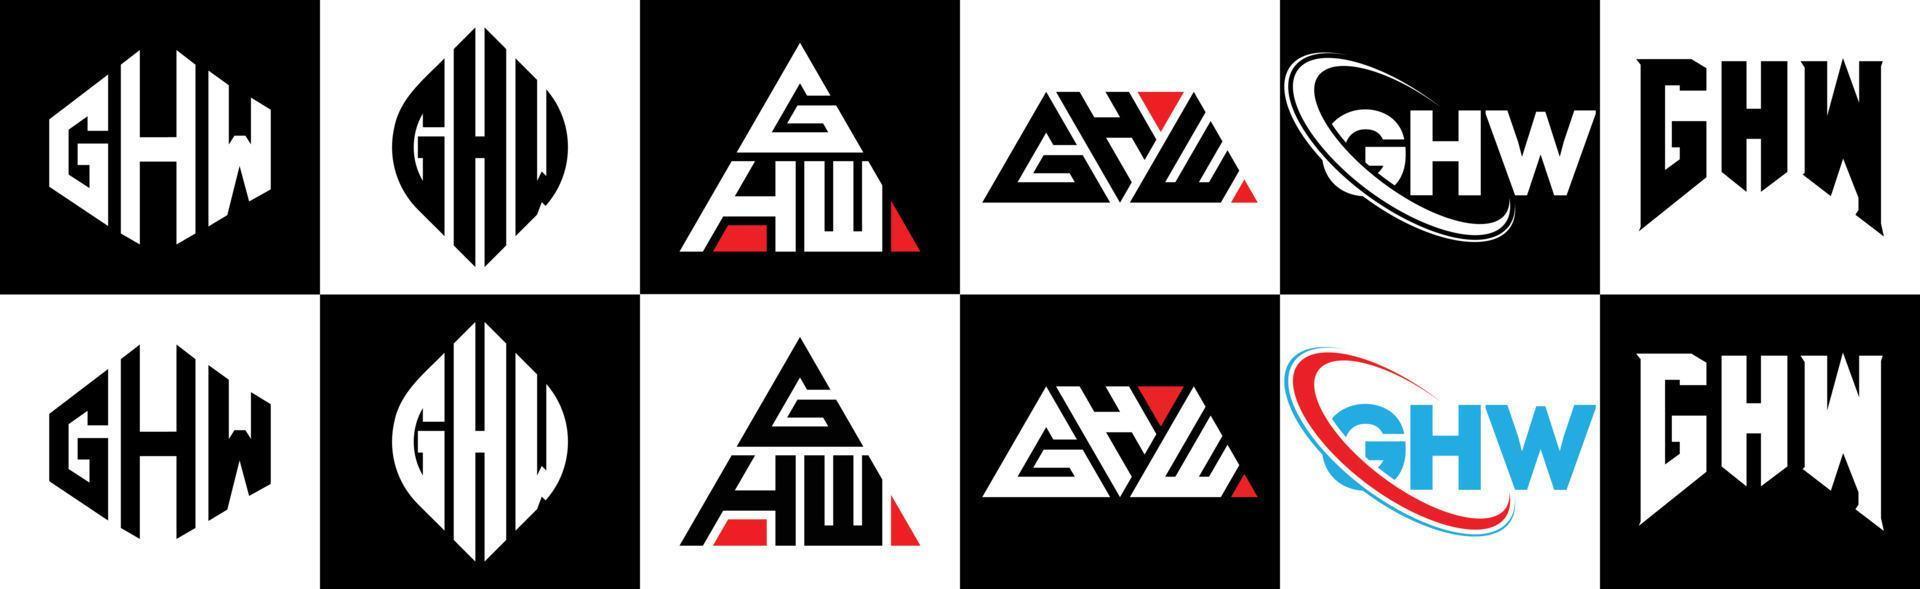 création de logo de lettre ghw en six styles. ghw polygone, cercle, triangle, hexagone, style plat et simple avec logo de lettre de variation de couleur noir et blanc dans un plan de travail. ghw logo minimaliste et classique vecteur